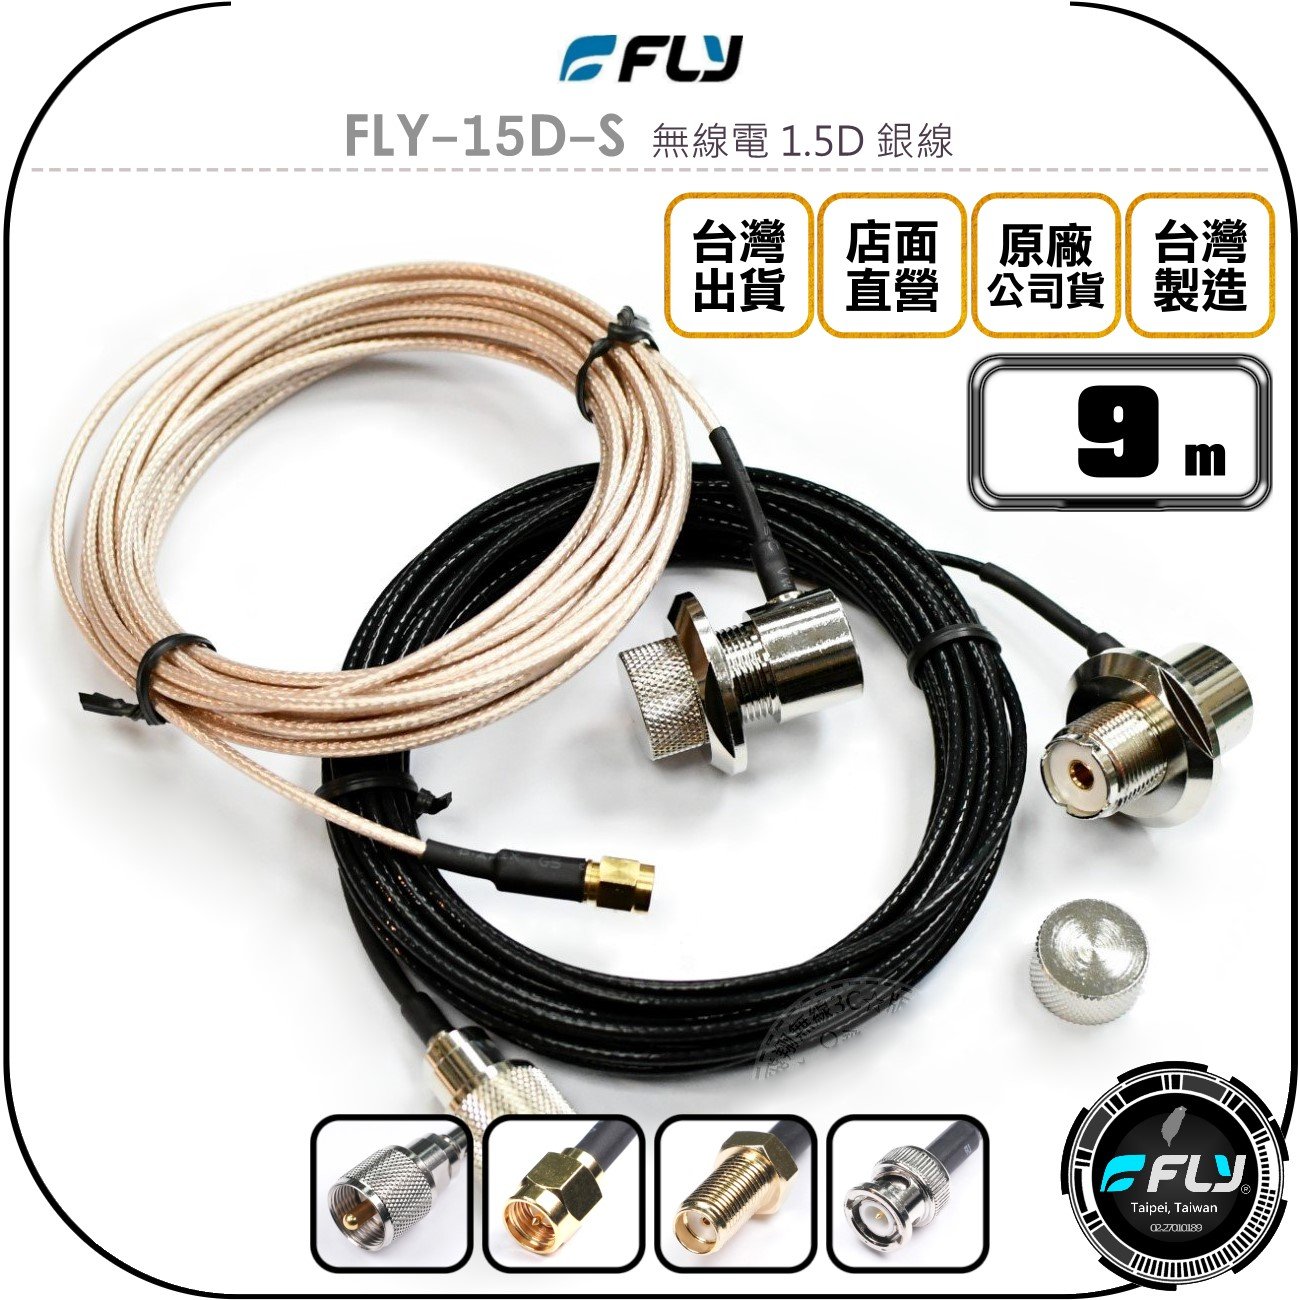 《飛翔無線3C》FLY FLY-15D-S 無線電 1.5D 銀線 9m◉公司貨◉訊號線◉對講機收發◉車機外接傳輸